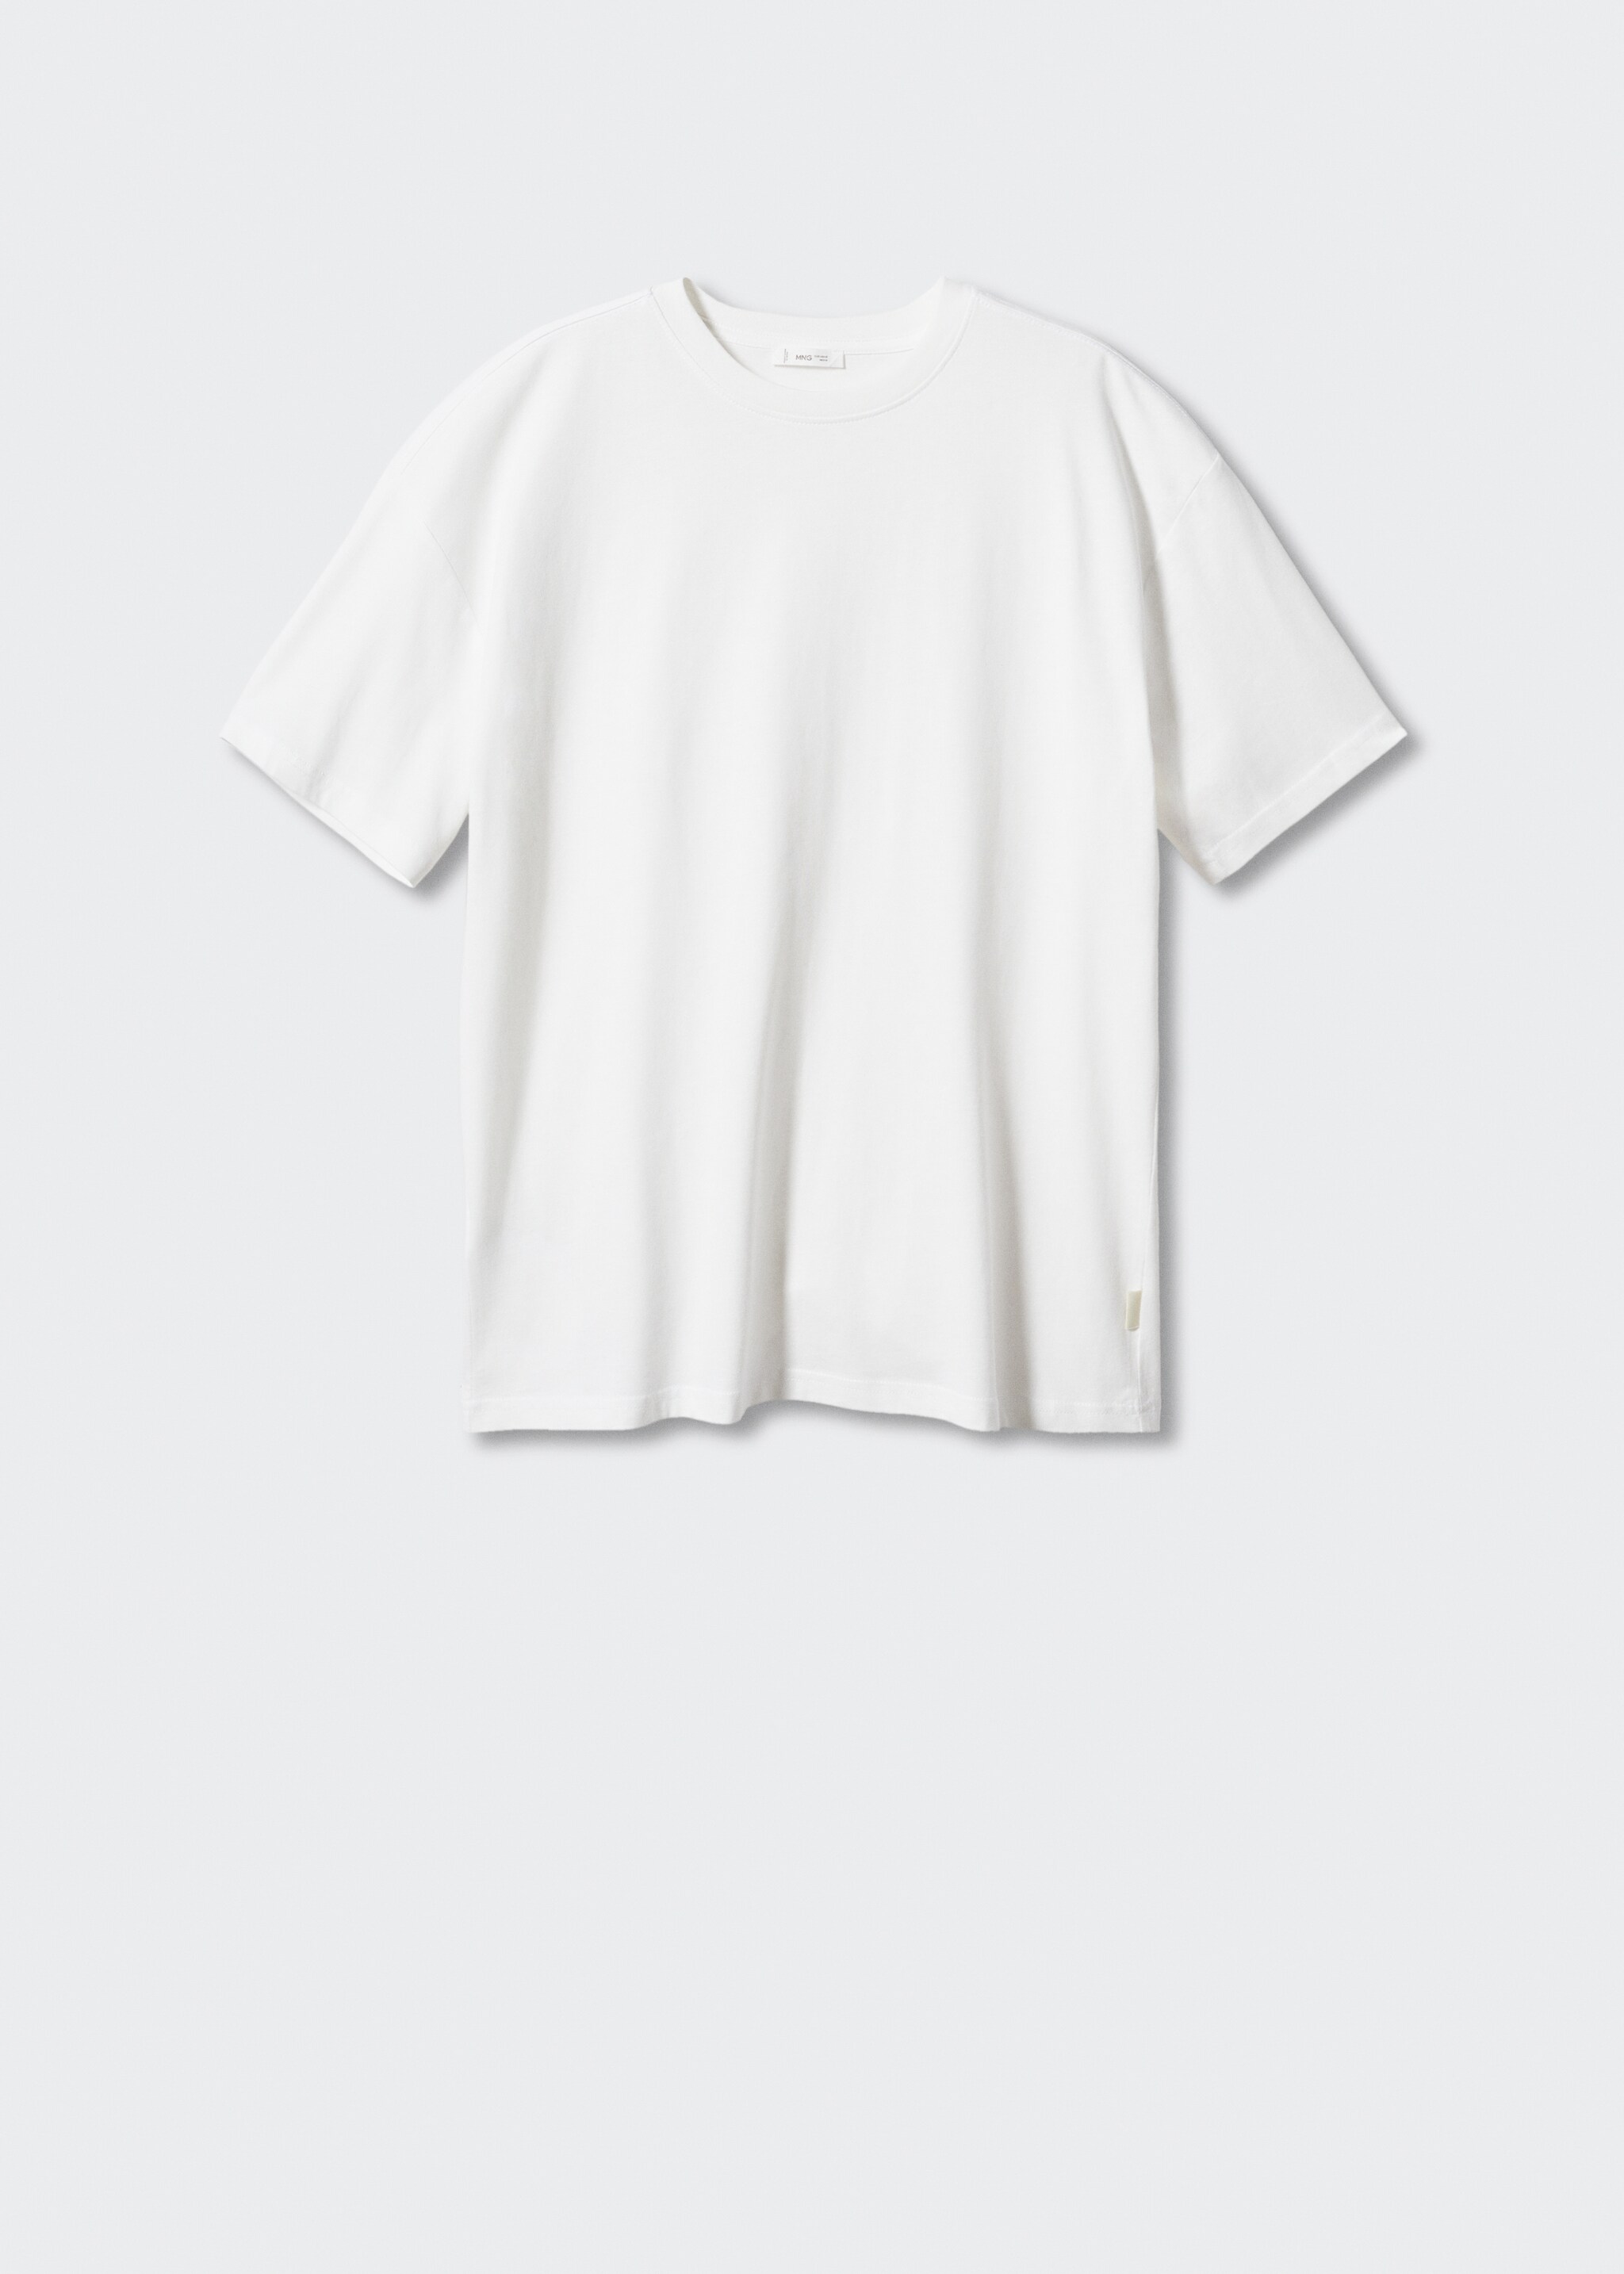 Объемная футболка базовой модели из хлопка - Изделие без модели